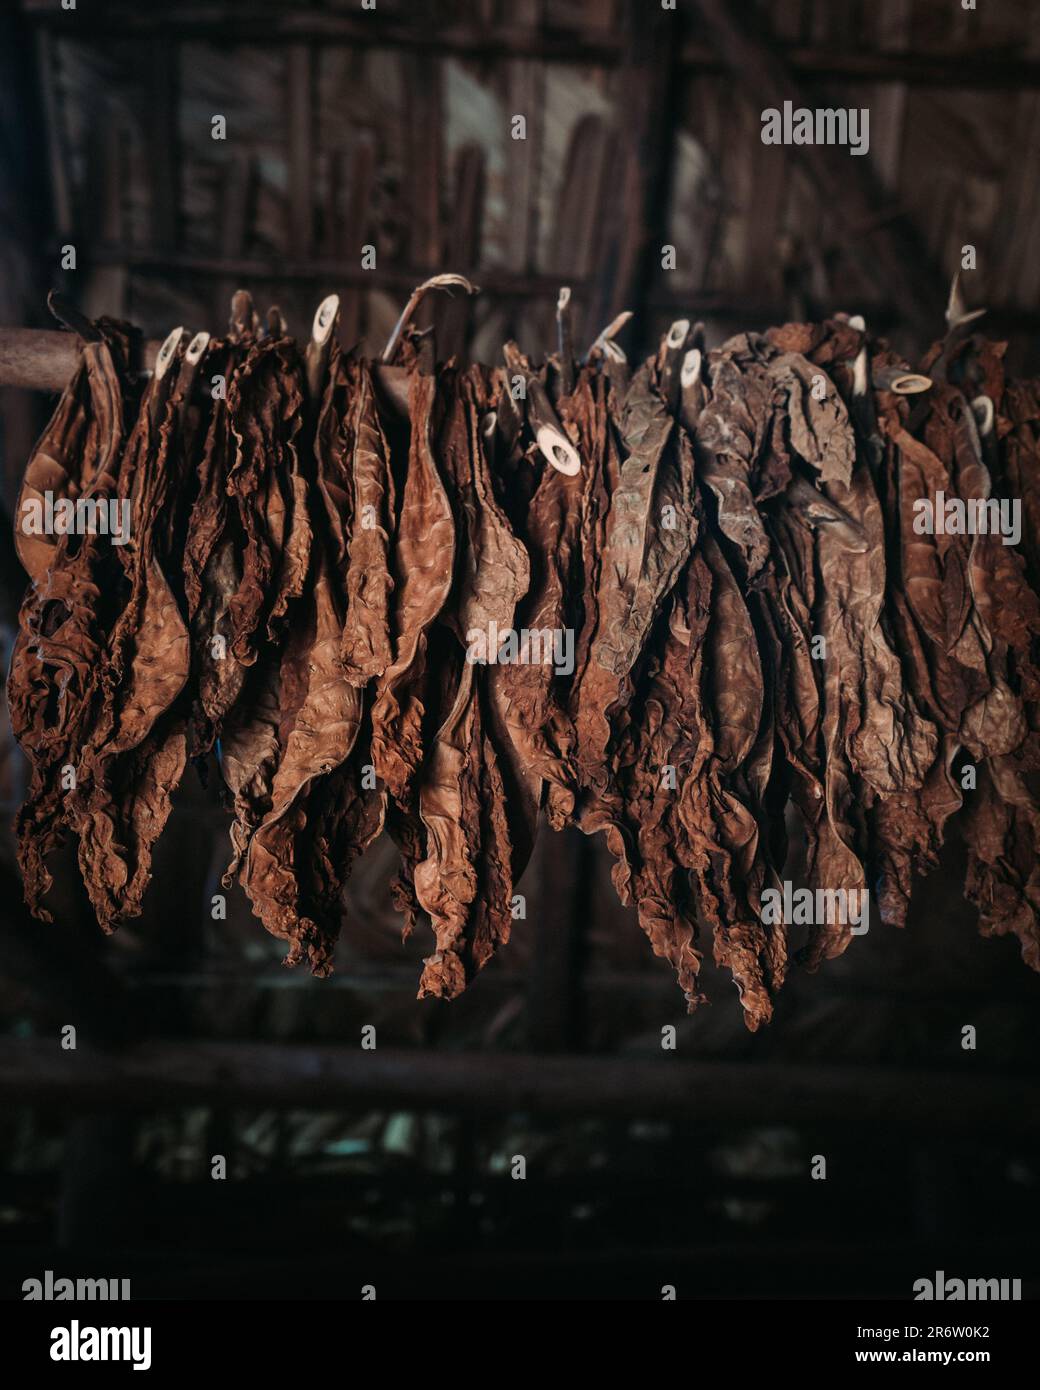 Tabakblätter hängen in der Luft und trocknen sanft, während sie sich verwandeln. Die Kunst der Natur entfaltet sich, indem sie die Essenz von Geduld und Handwerkskunst einfängt Stockfoto